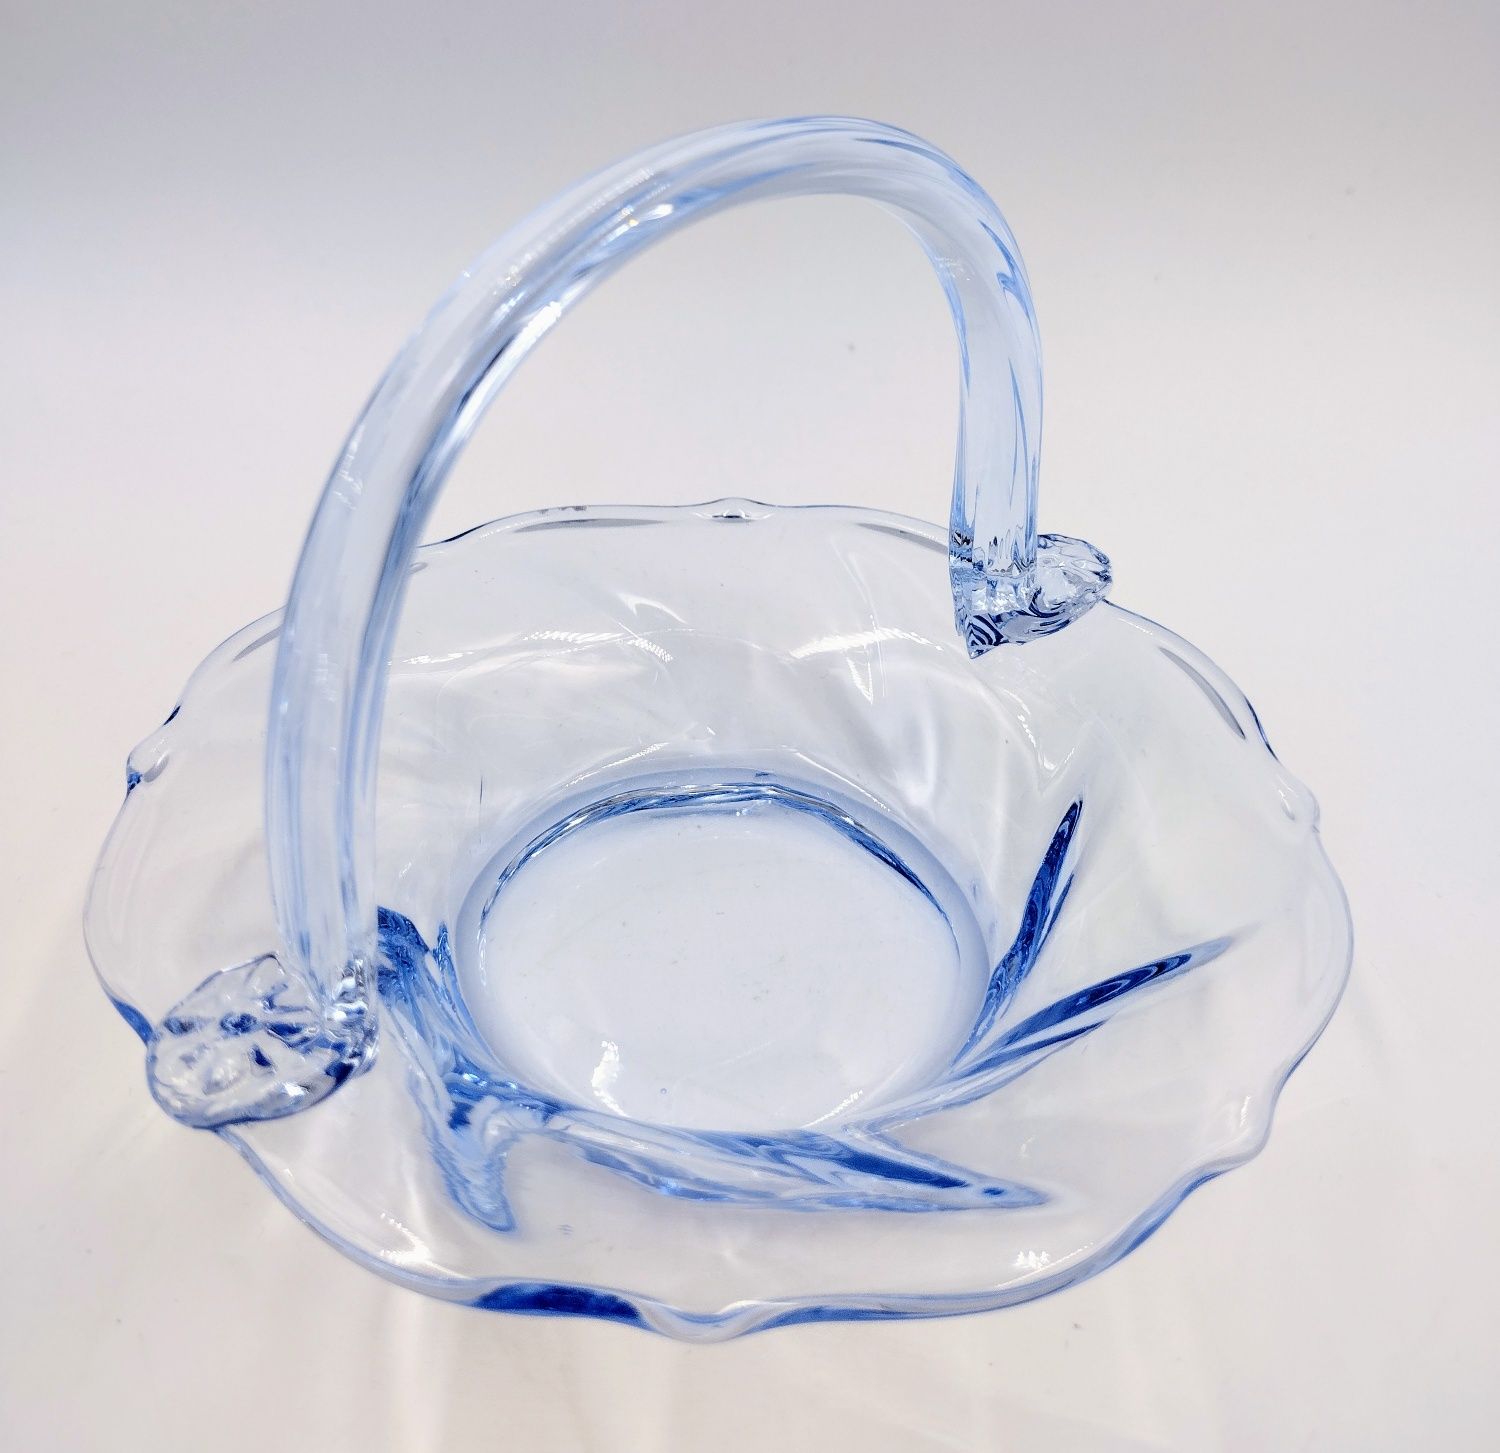 Koszyk szklany antyk retro błękitny vintage design szkło